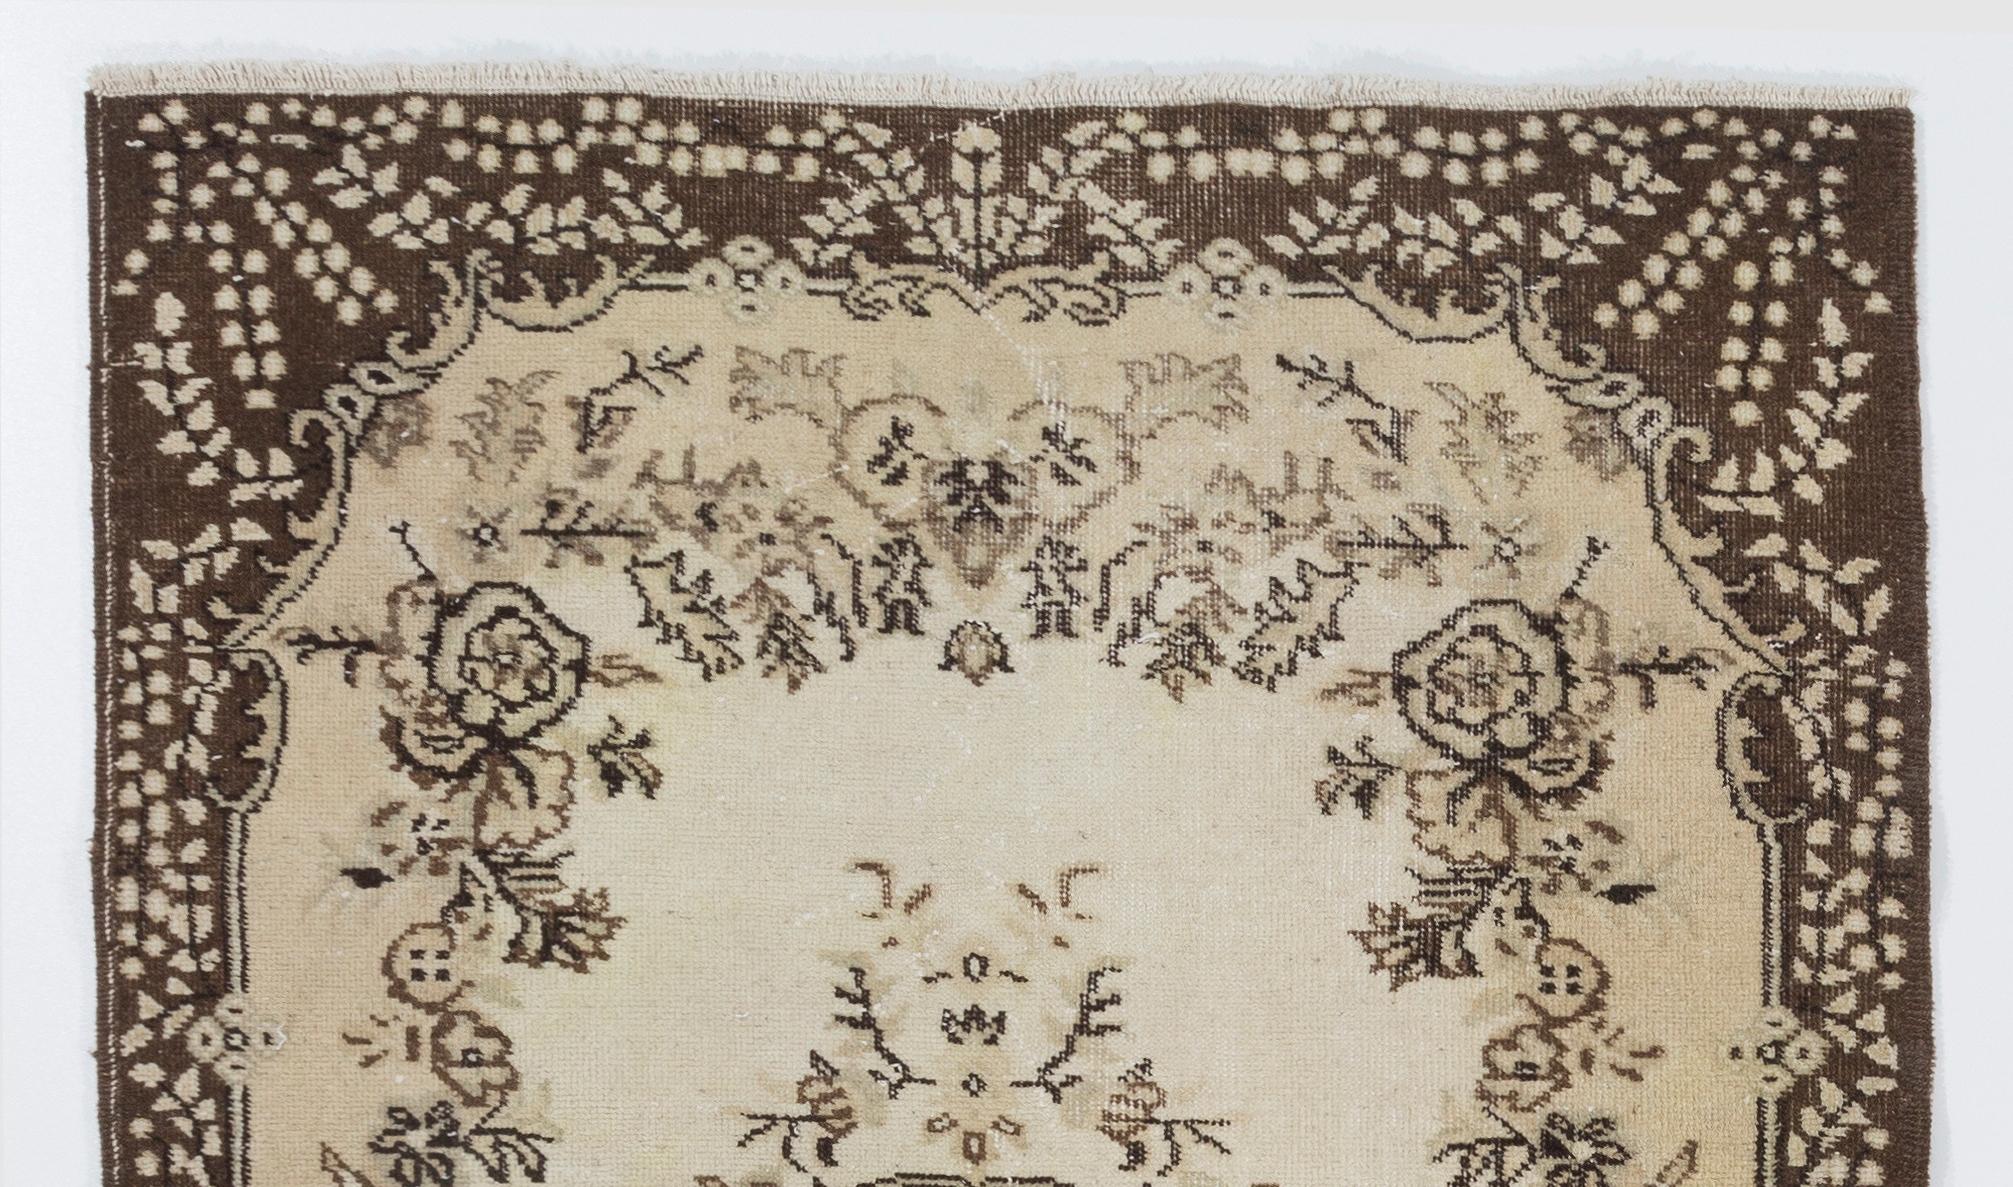 Un tapis turc vintage noué à la main dans des couleurs douces. Le tapis présente un motif de médaillon floral dans un champ décoré de motifs floraux. Il est en très bon état, robuste et propre comme un tapis neuf. Mesures : 4 x 7 ft.
  